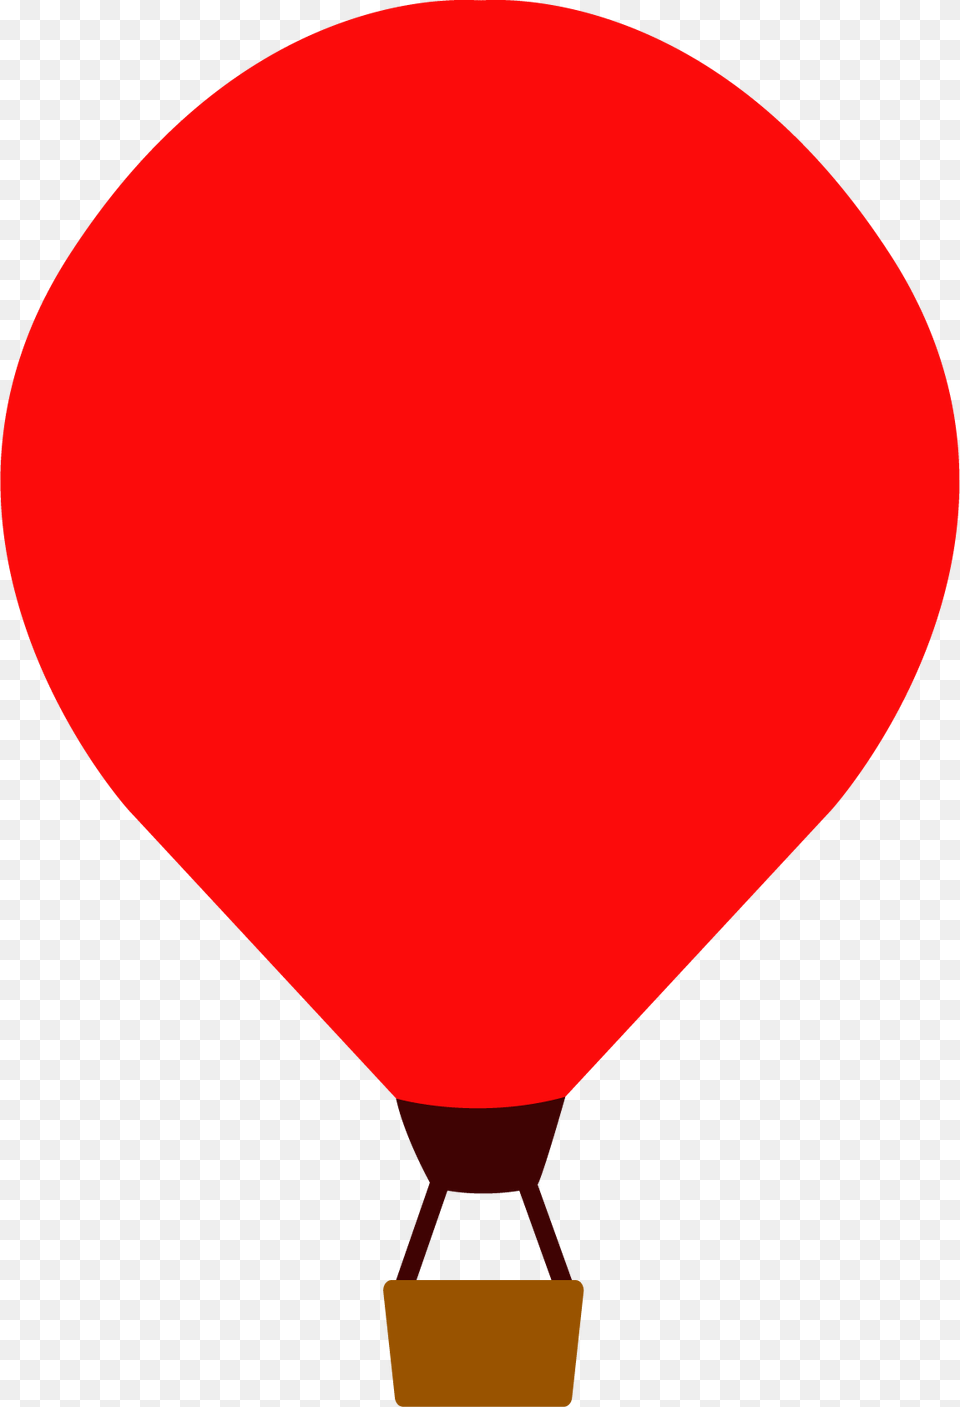 Trafico, Aircraft, Balloon, Hot Air Balloon, Transportation Png